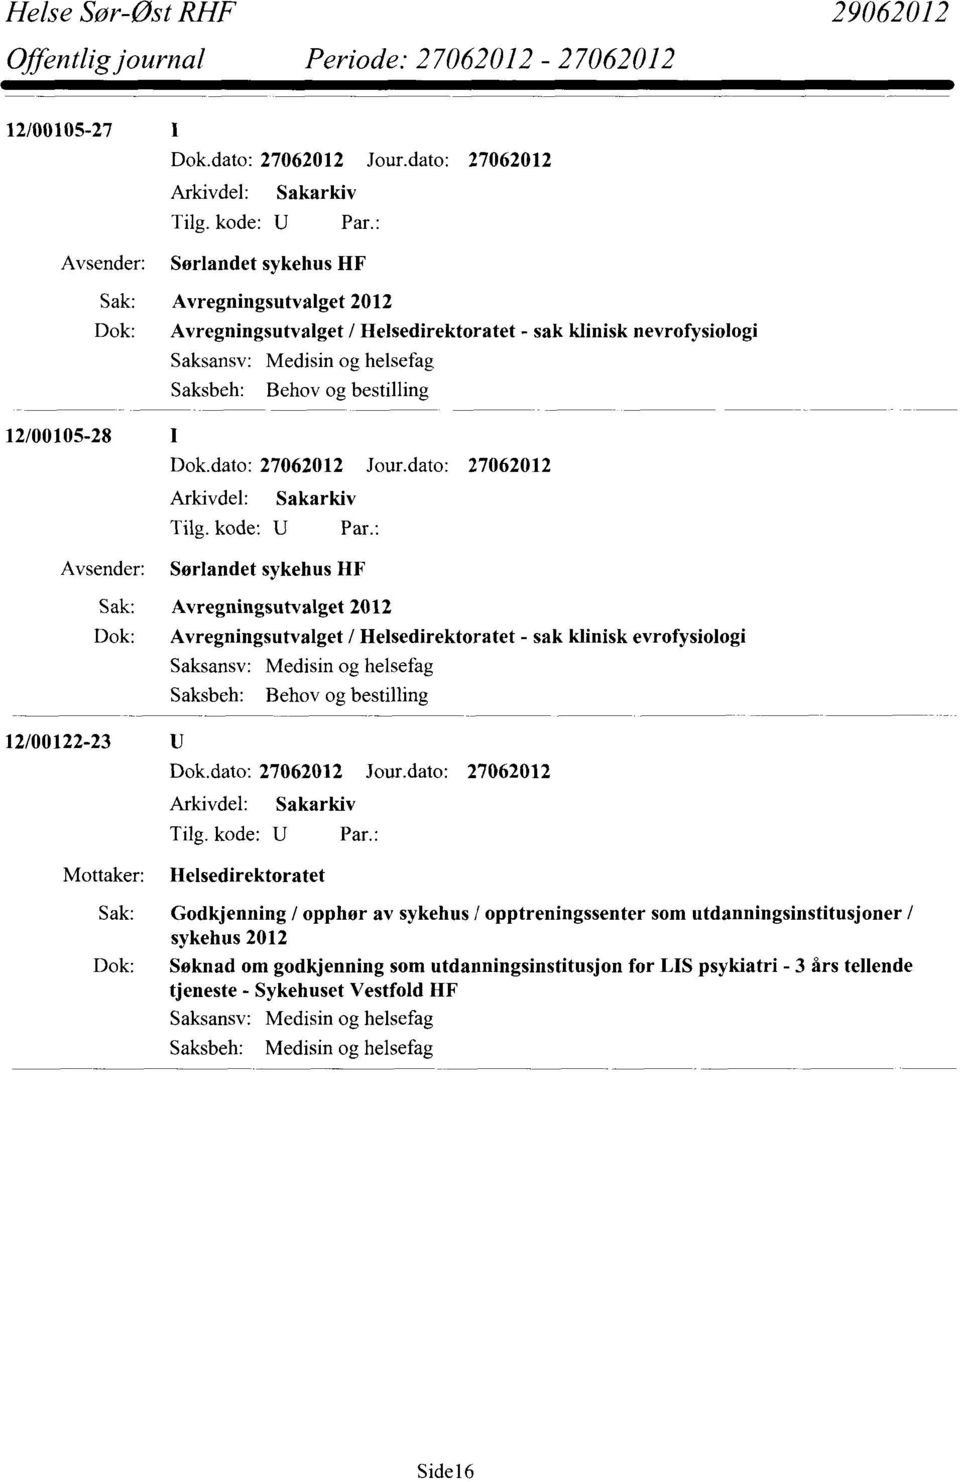 Medisin og helsefag Saksbeh: Behov og bestilling 12/00122-23 Helsedirektoratet Sak: Godkjenning / opphør av sykehus / opptreningssenter som utdanningsinstitusjoner / sykehus 2012